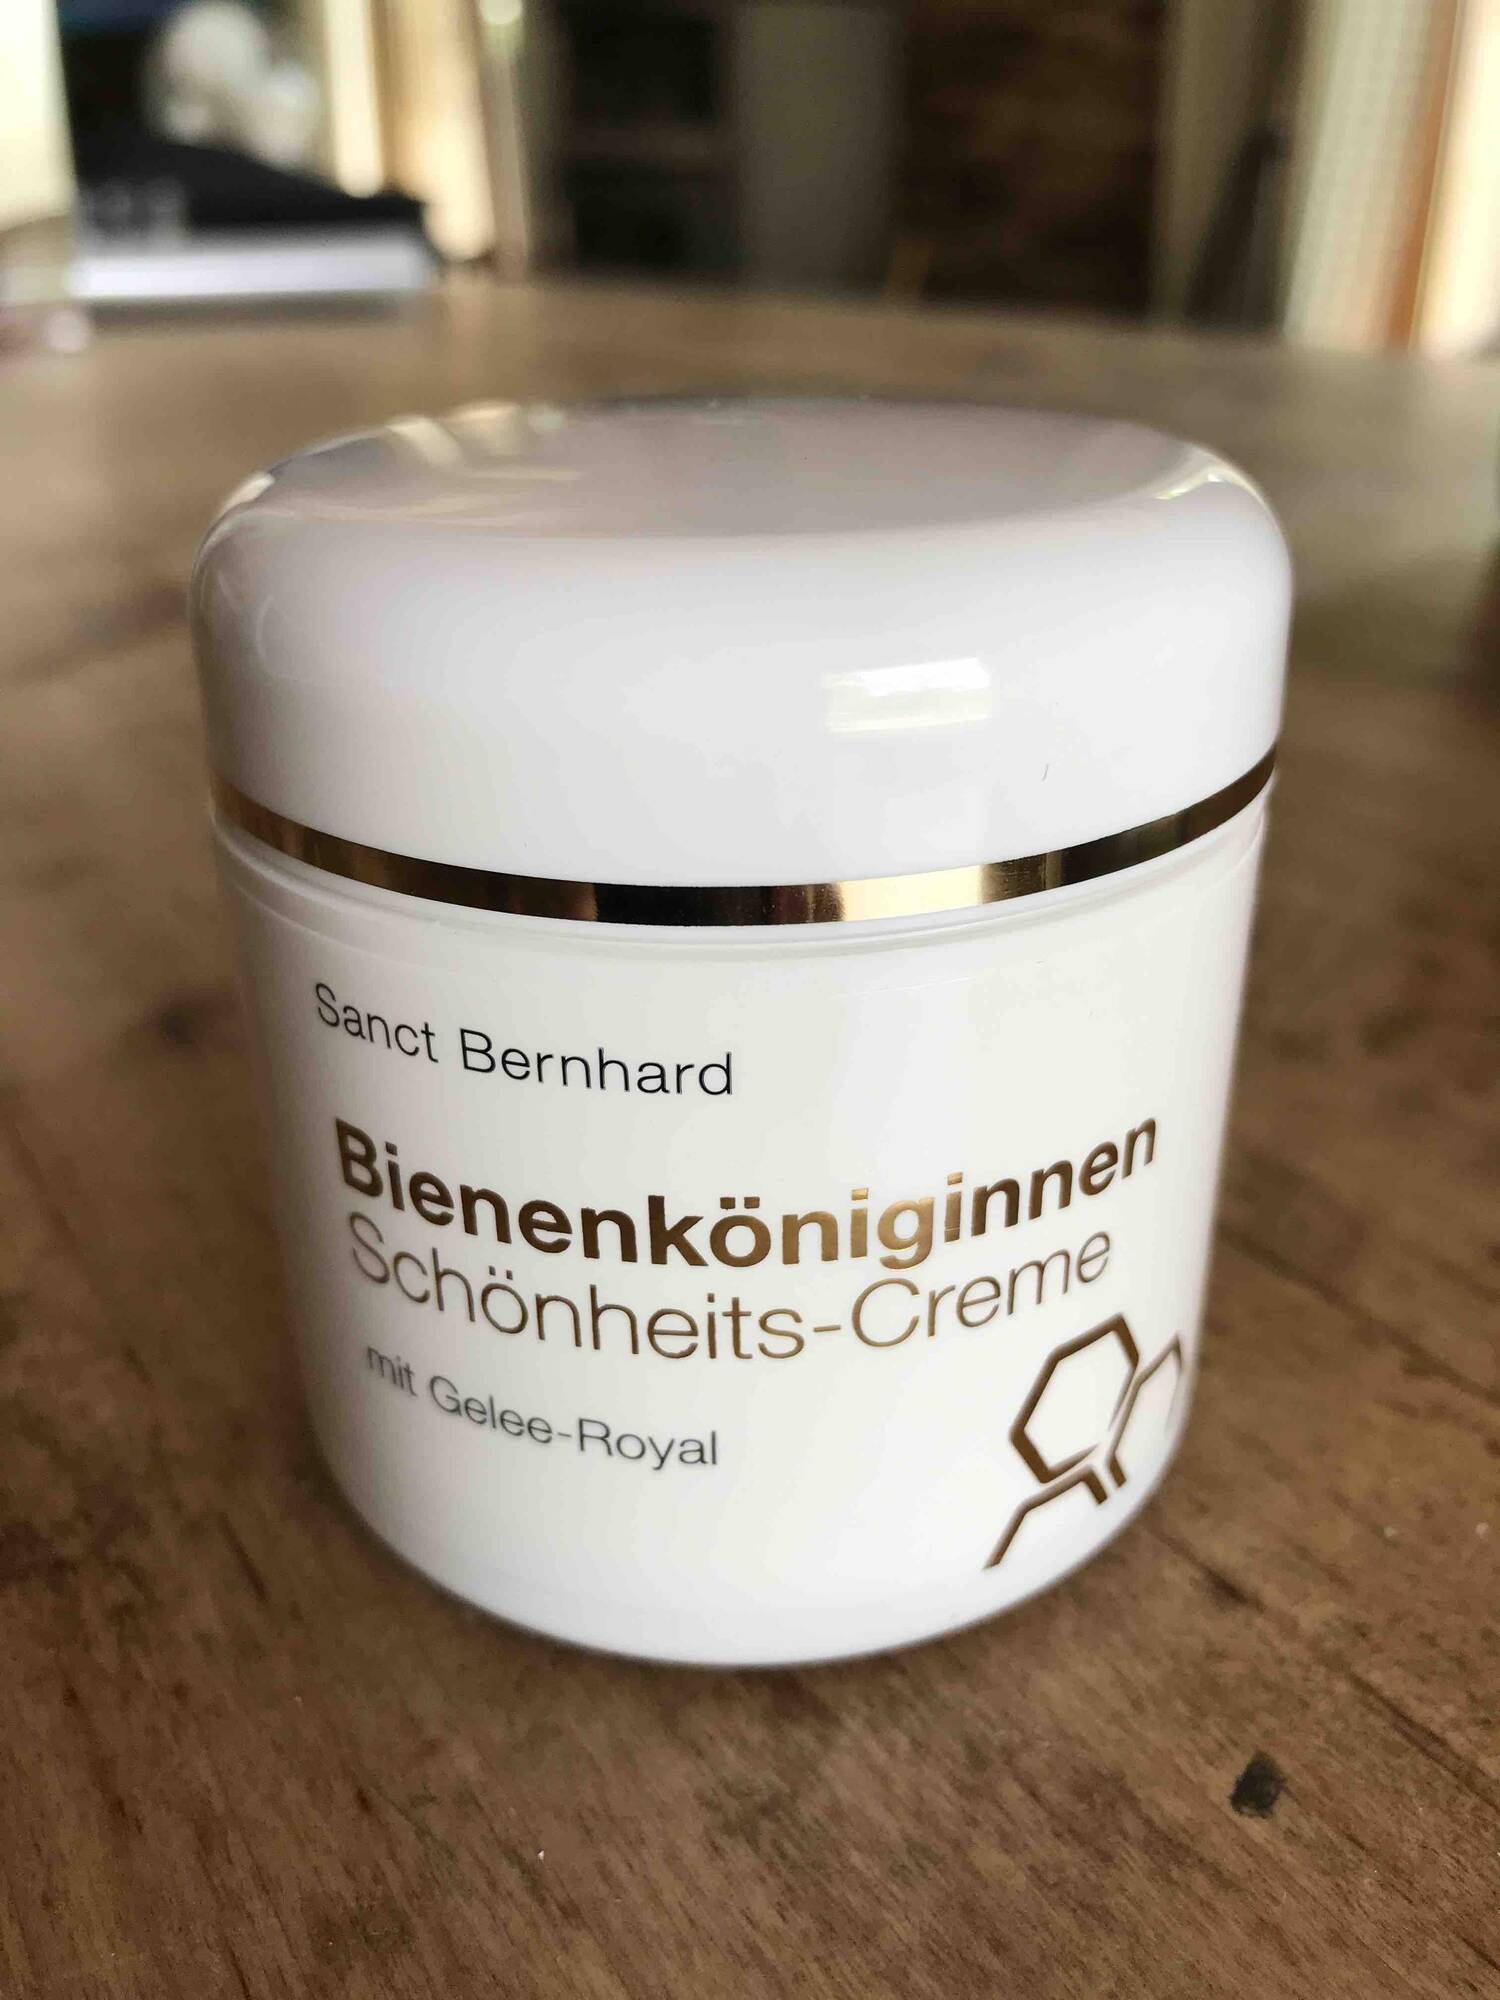 SANCT BERNHARD - Bienenköniginnen - Schönheits-creme mit gelee-royal